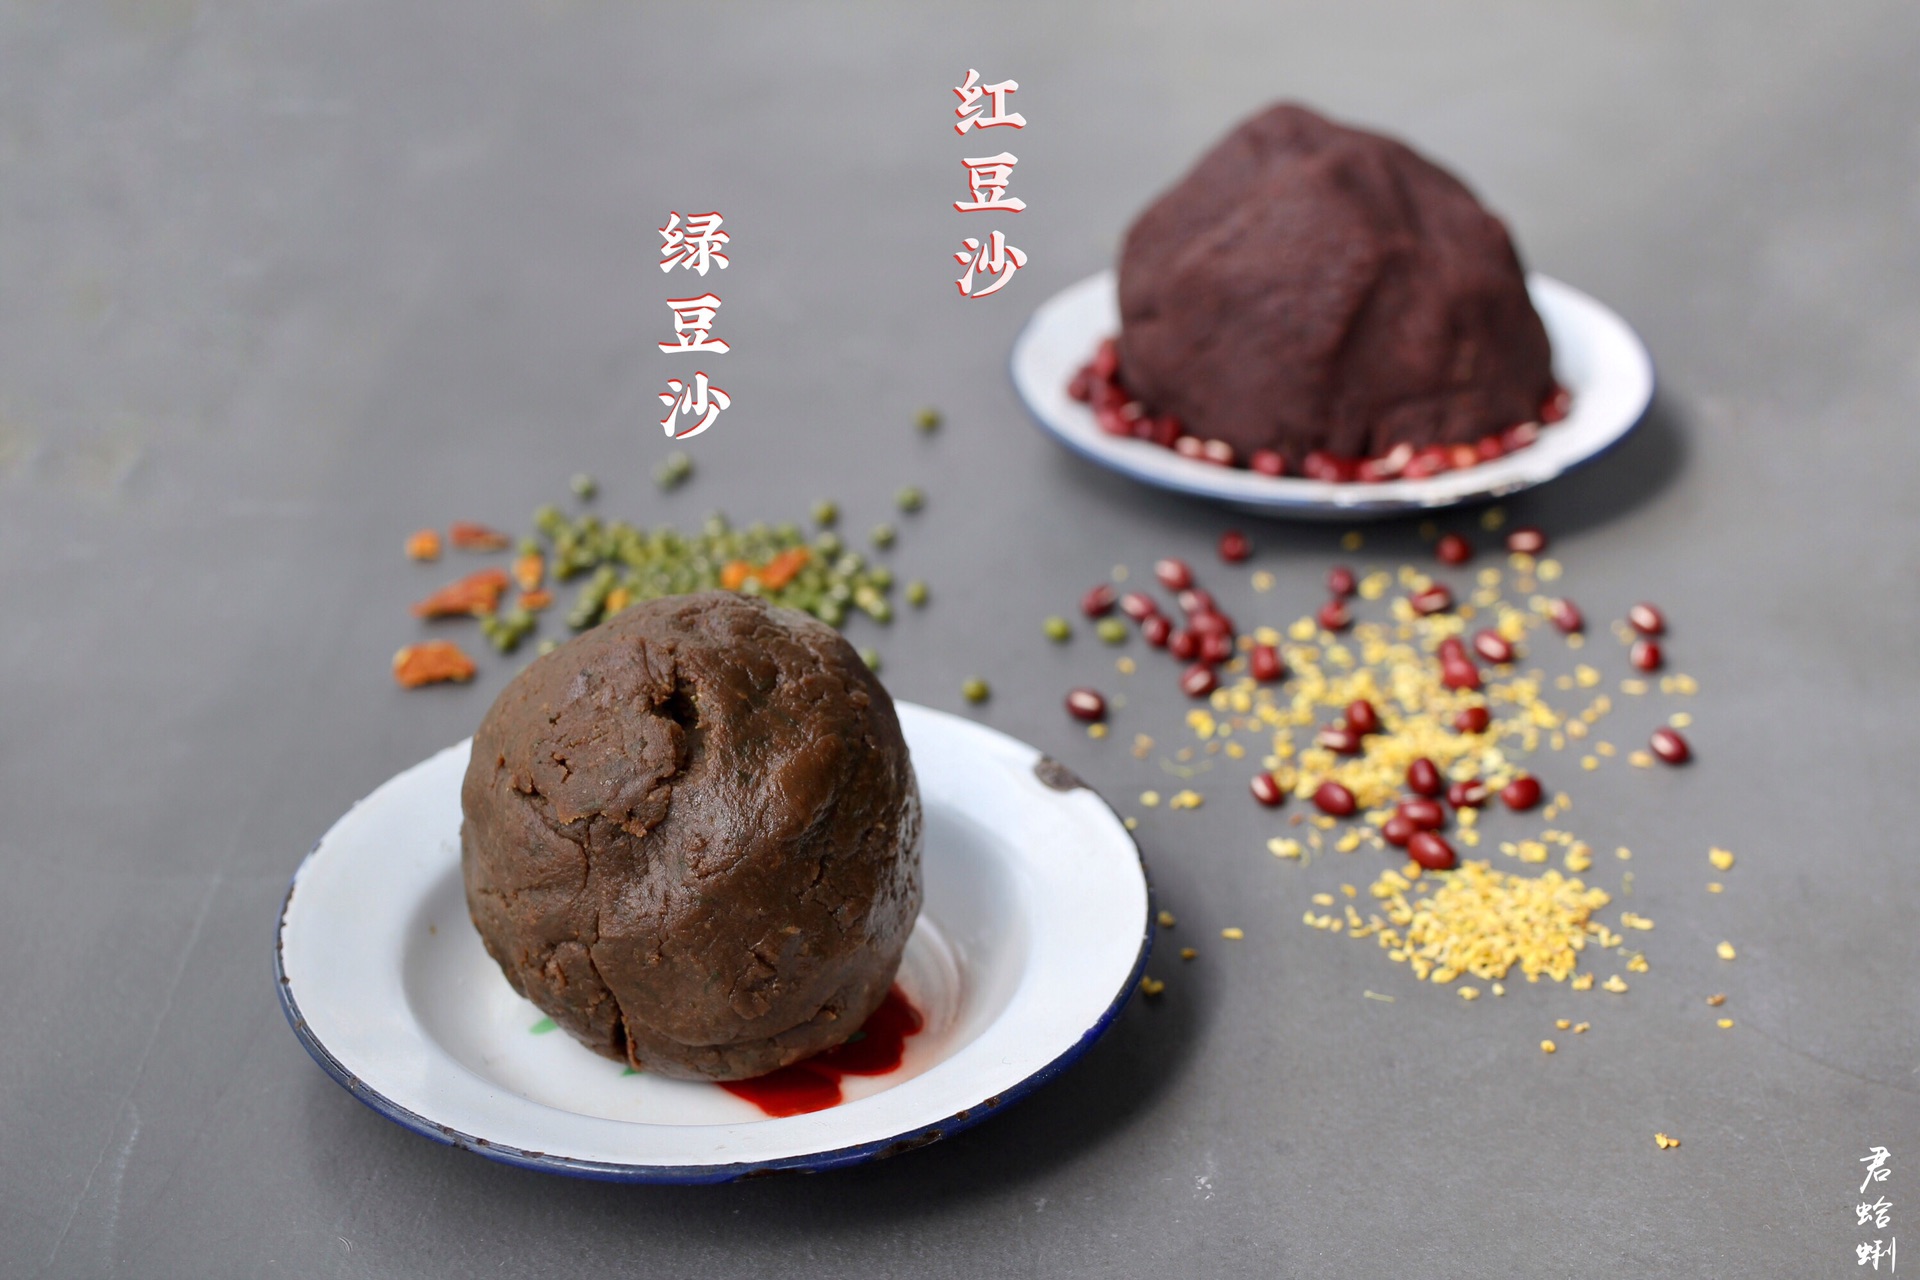 中国馅（一）-红糖绿豆沙、桂花红豆沙